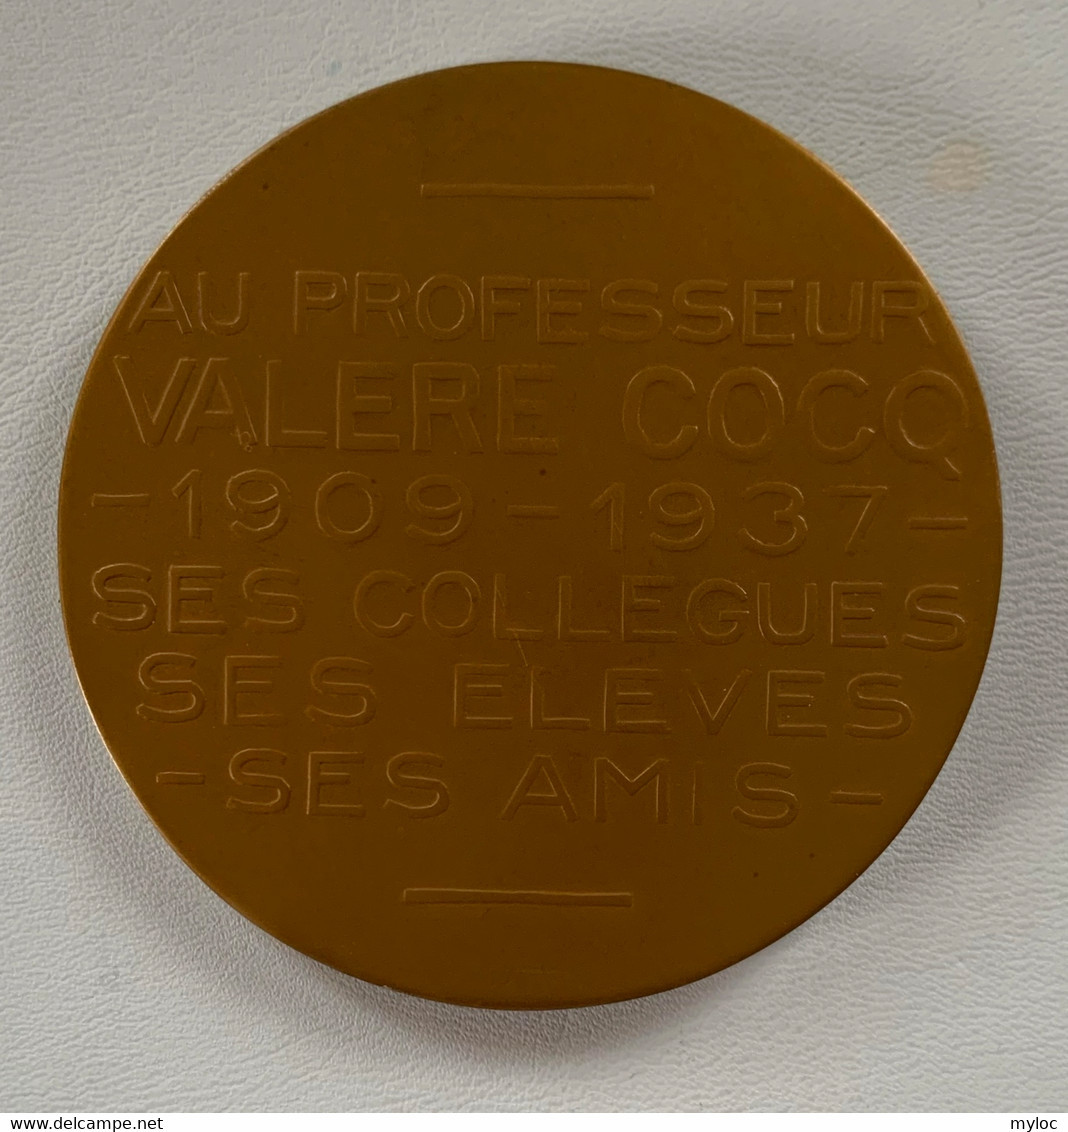 Médaille Bronze. Valère Cocq. Au Professeur Valère Cocq 1909-1934. Ses Collègues, Ses élèves, Ses Amis. A. Bonnetain - Profesionales / De Sociedad